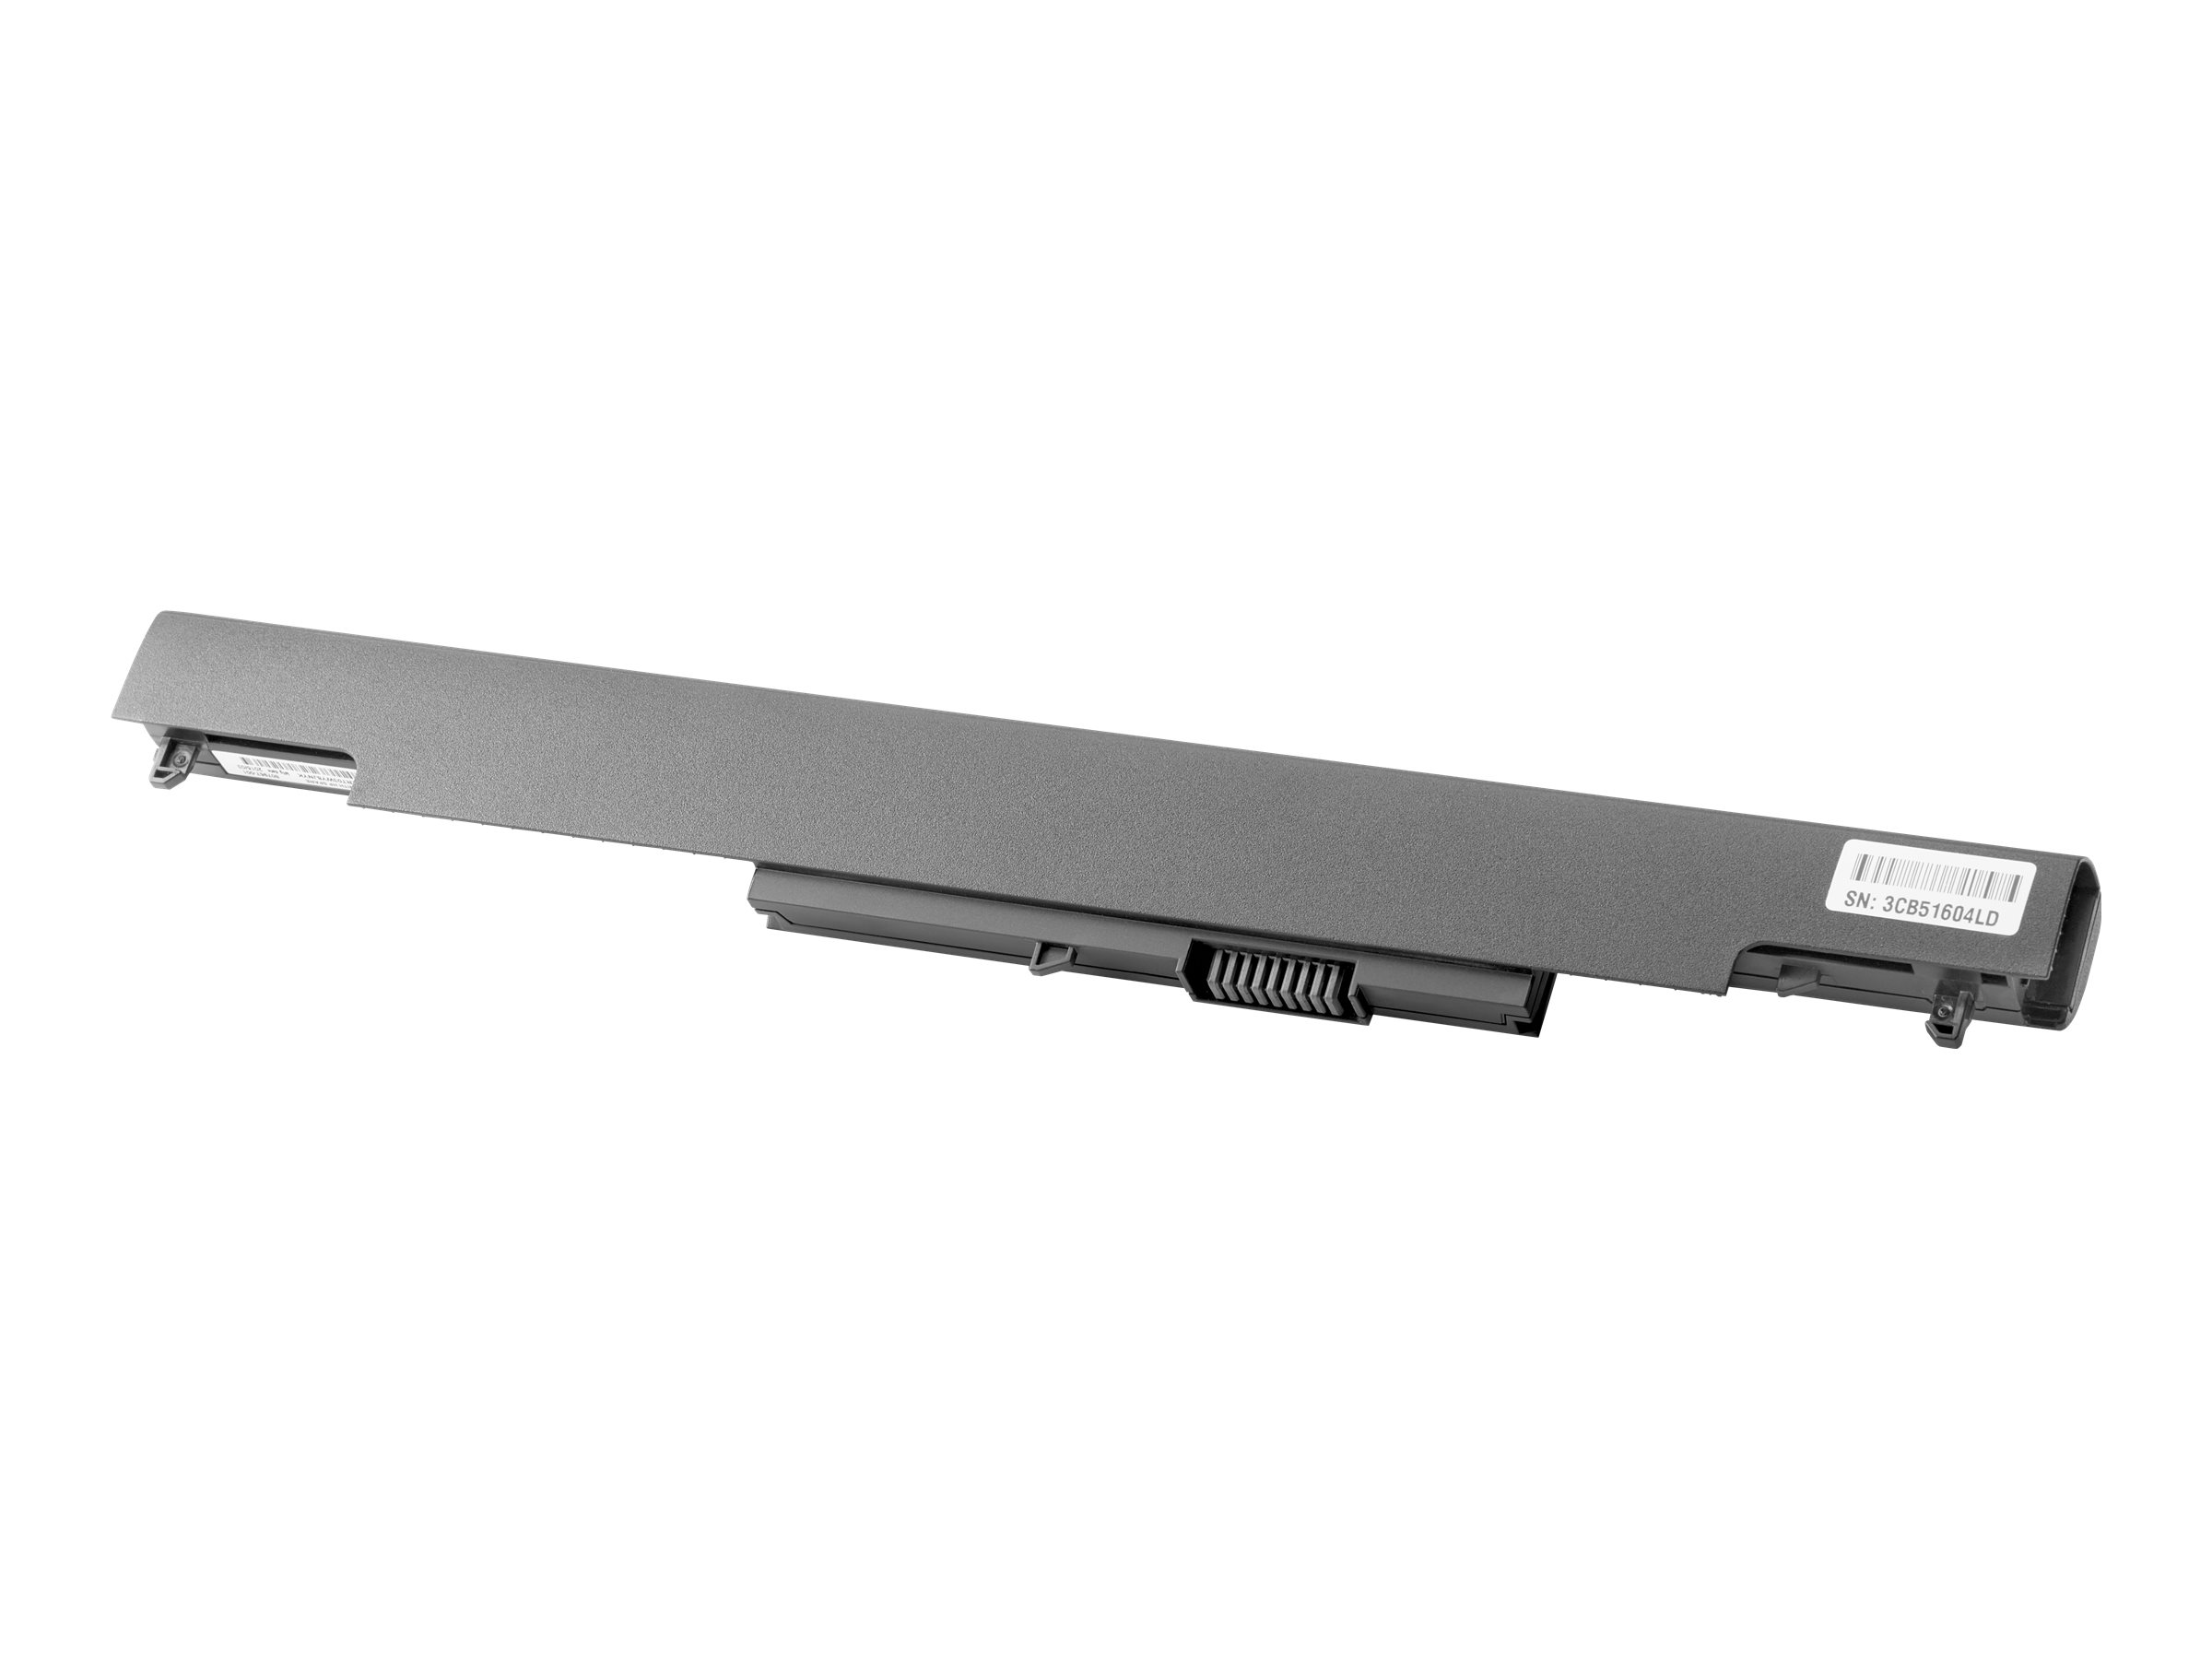 HP HS04041 - Batterie de portable - Europe - pour OMEN X by HP 900; ENVY 15; Laptop 14, 15, 17; Pavilion 15; Slimline 260; Stream Laptop 13 - N2L85AA#ABB - Batteries spécifiques